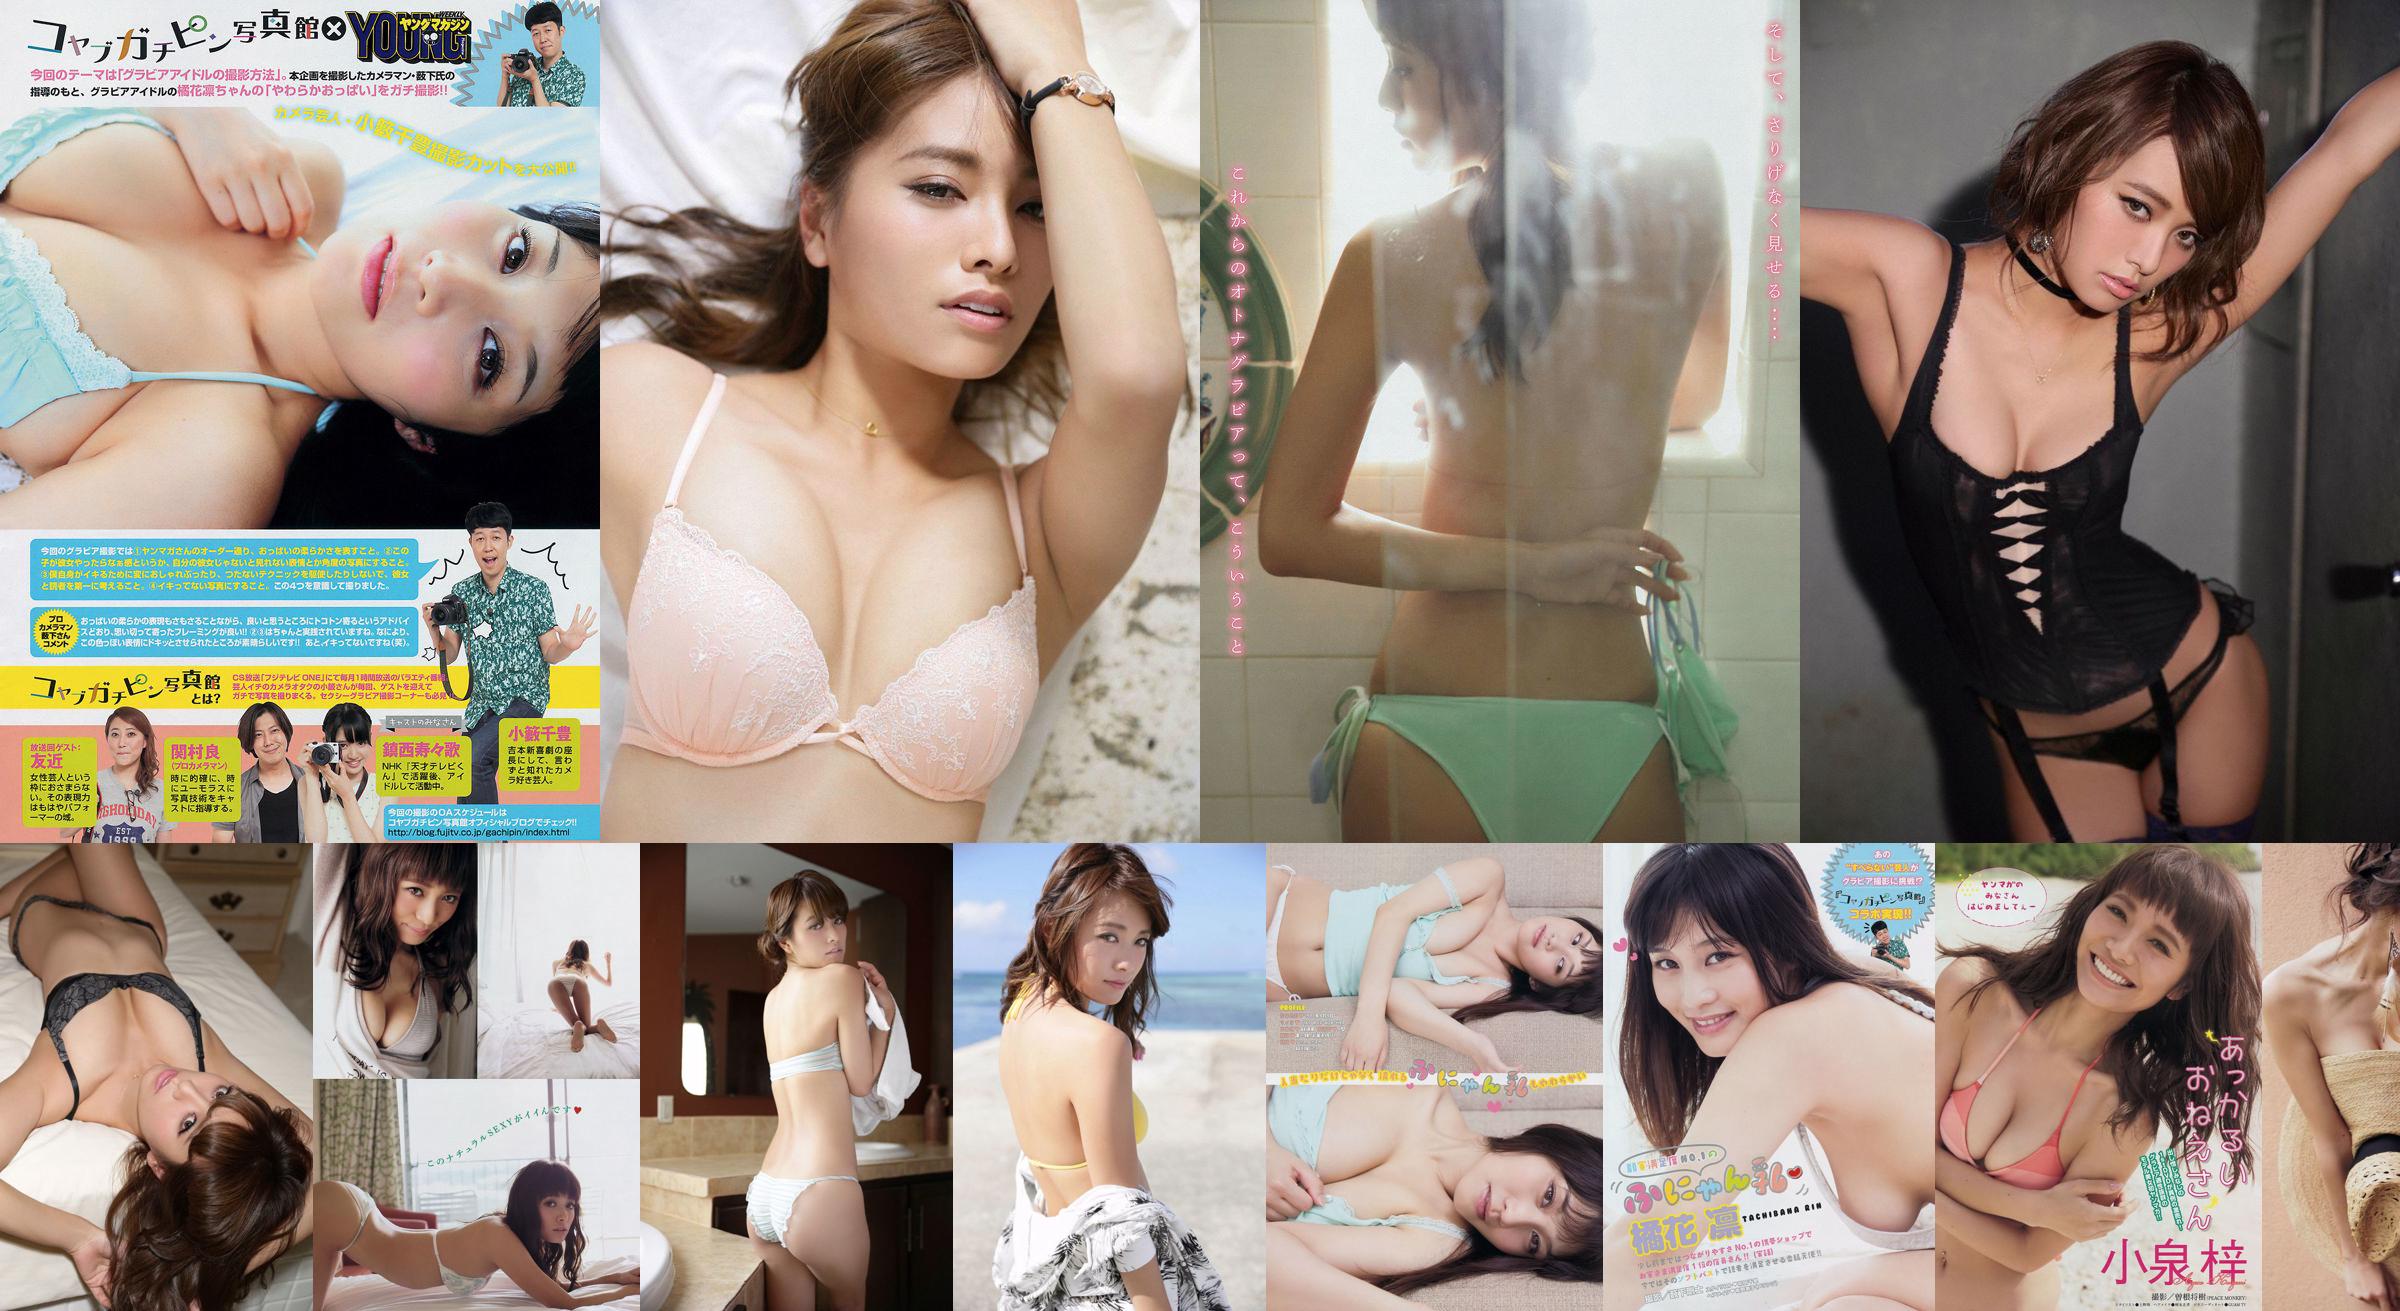 [Young Magazine] Azusa Koizumi Tachibana Rin 2014 No.43 Photo Magazine No.f108ef Page 1